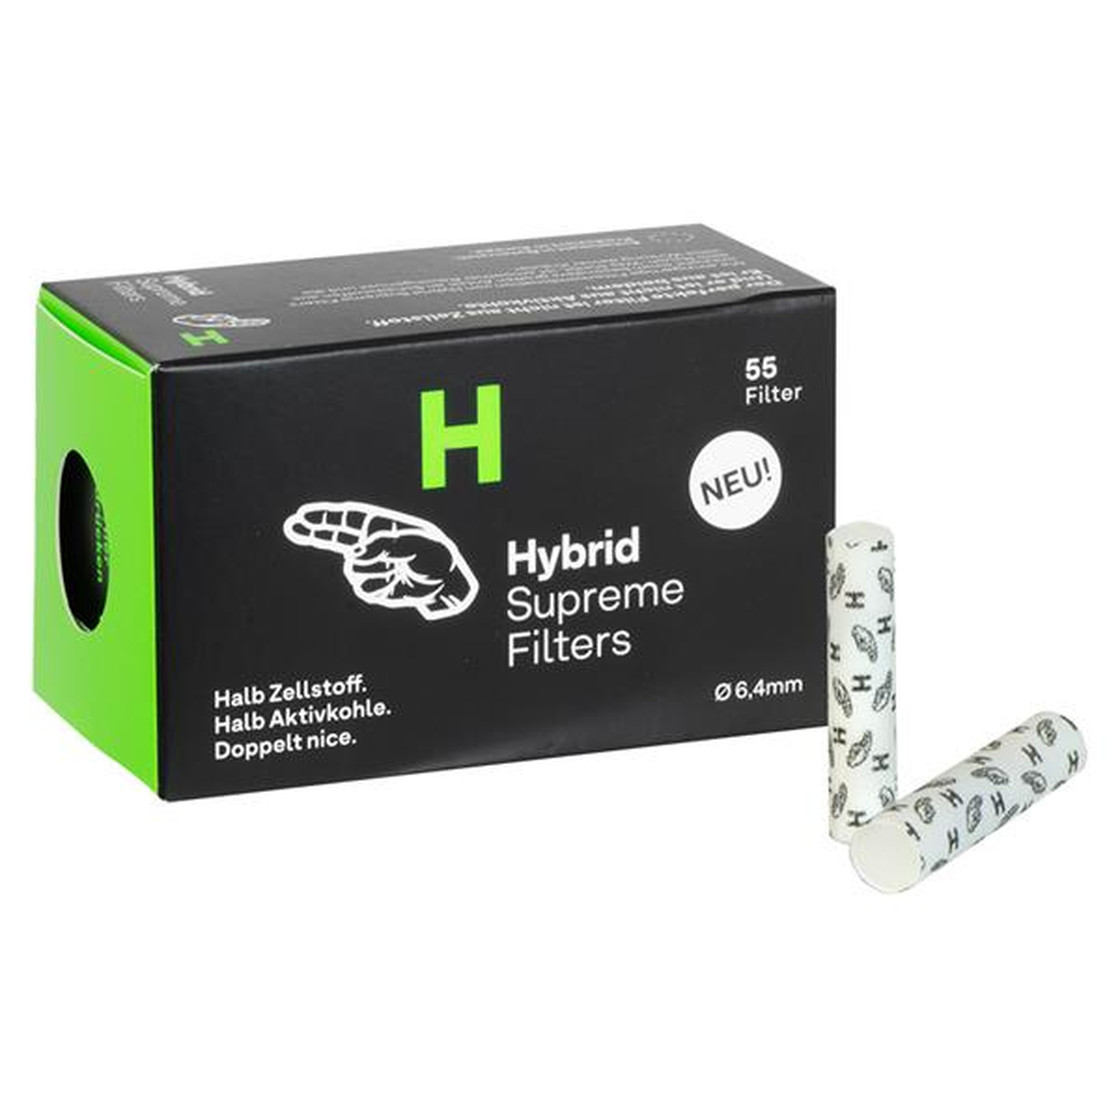 Hybrid Supreme Filter jetzt kostengünstig bei uns! - Headshop